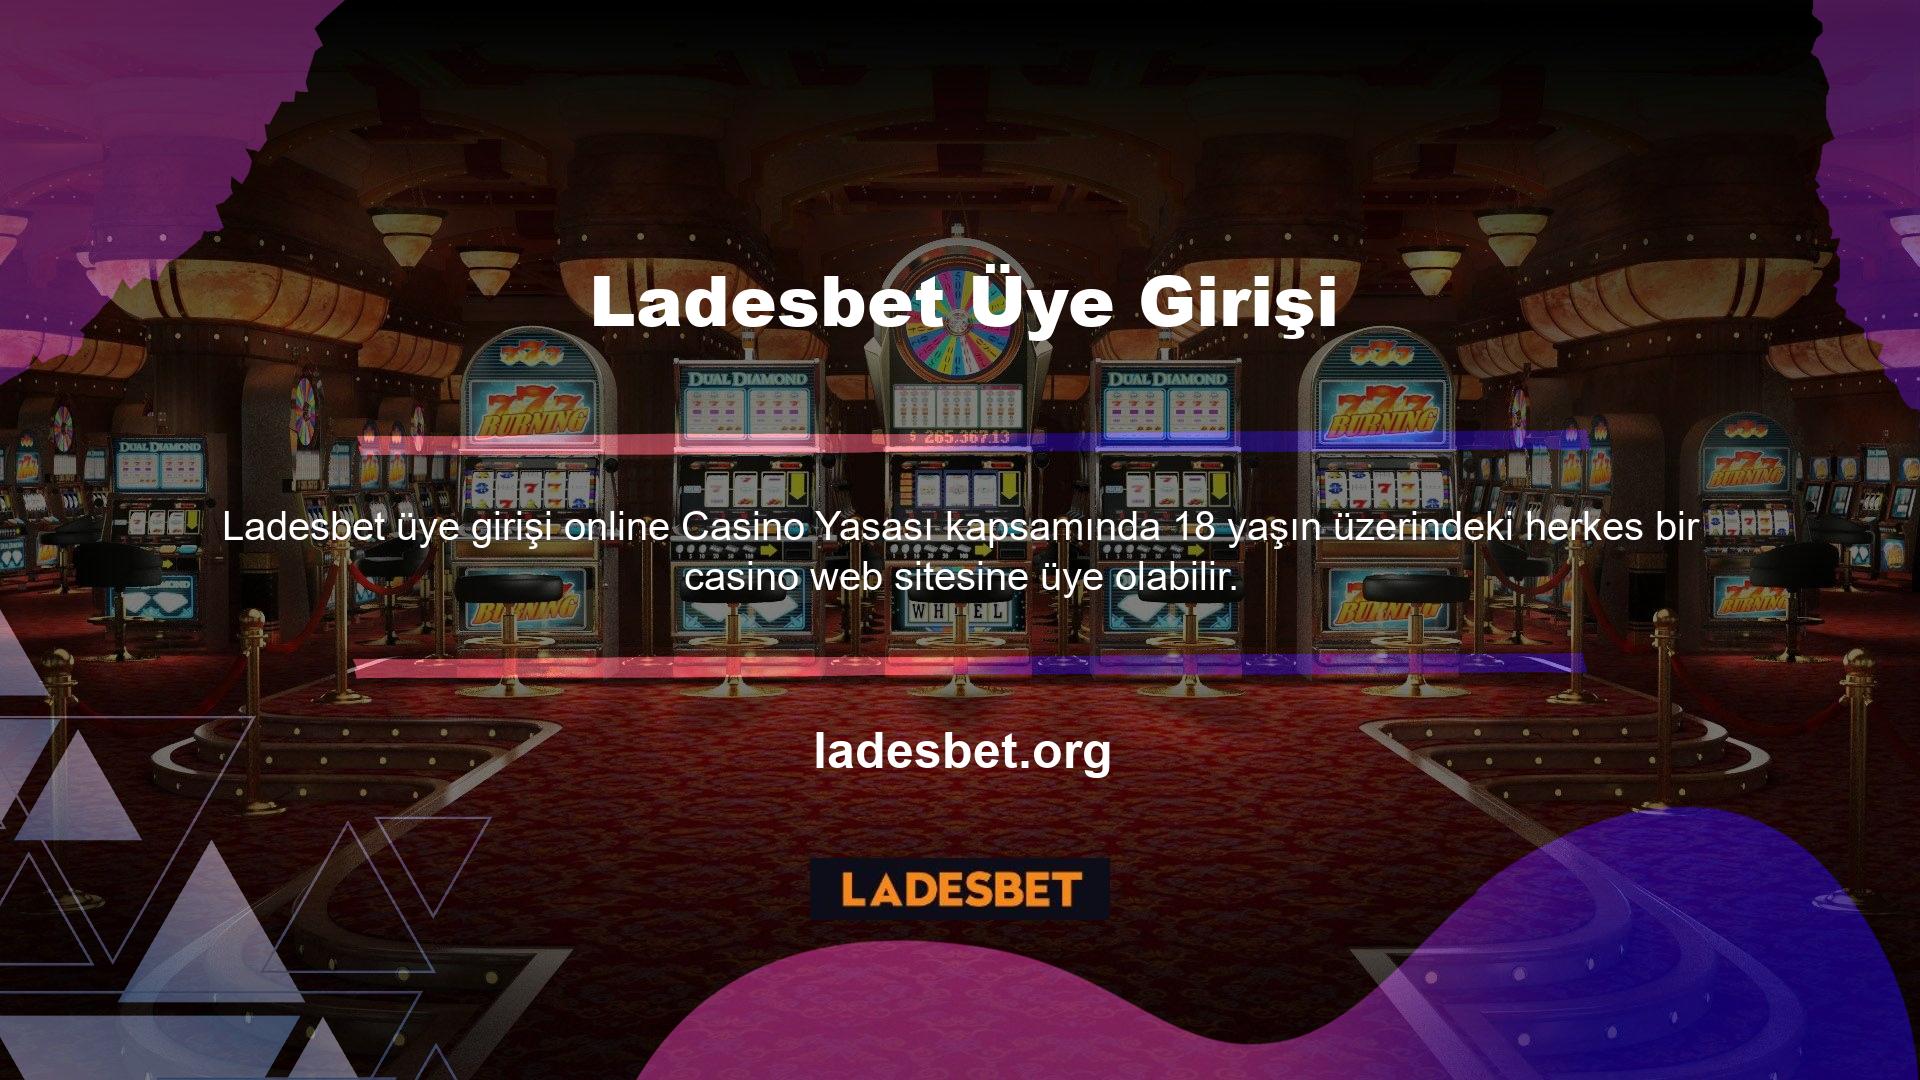 Türk oyuncular Ladesbet web sitesindeki katılım formunu doldurarak cari hesap oluşturabilirler